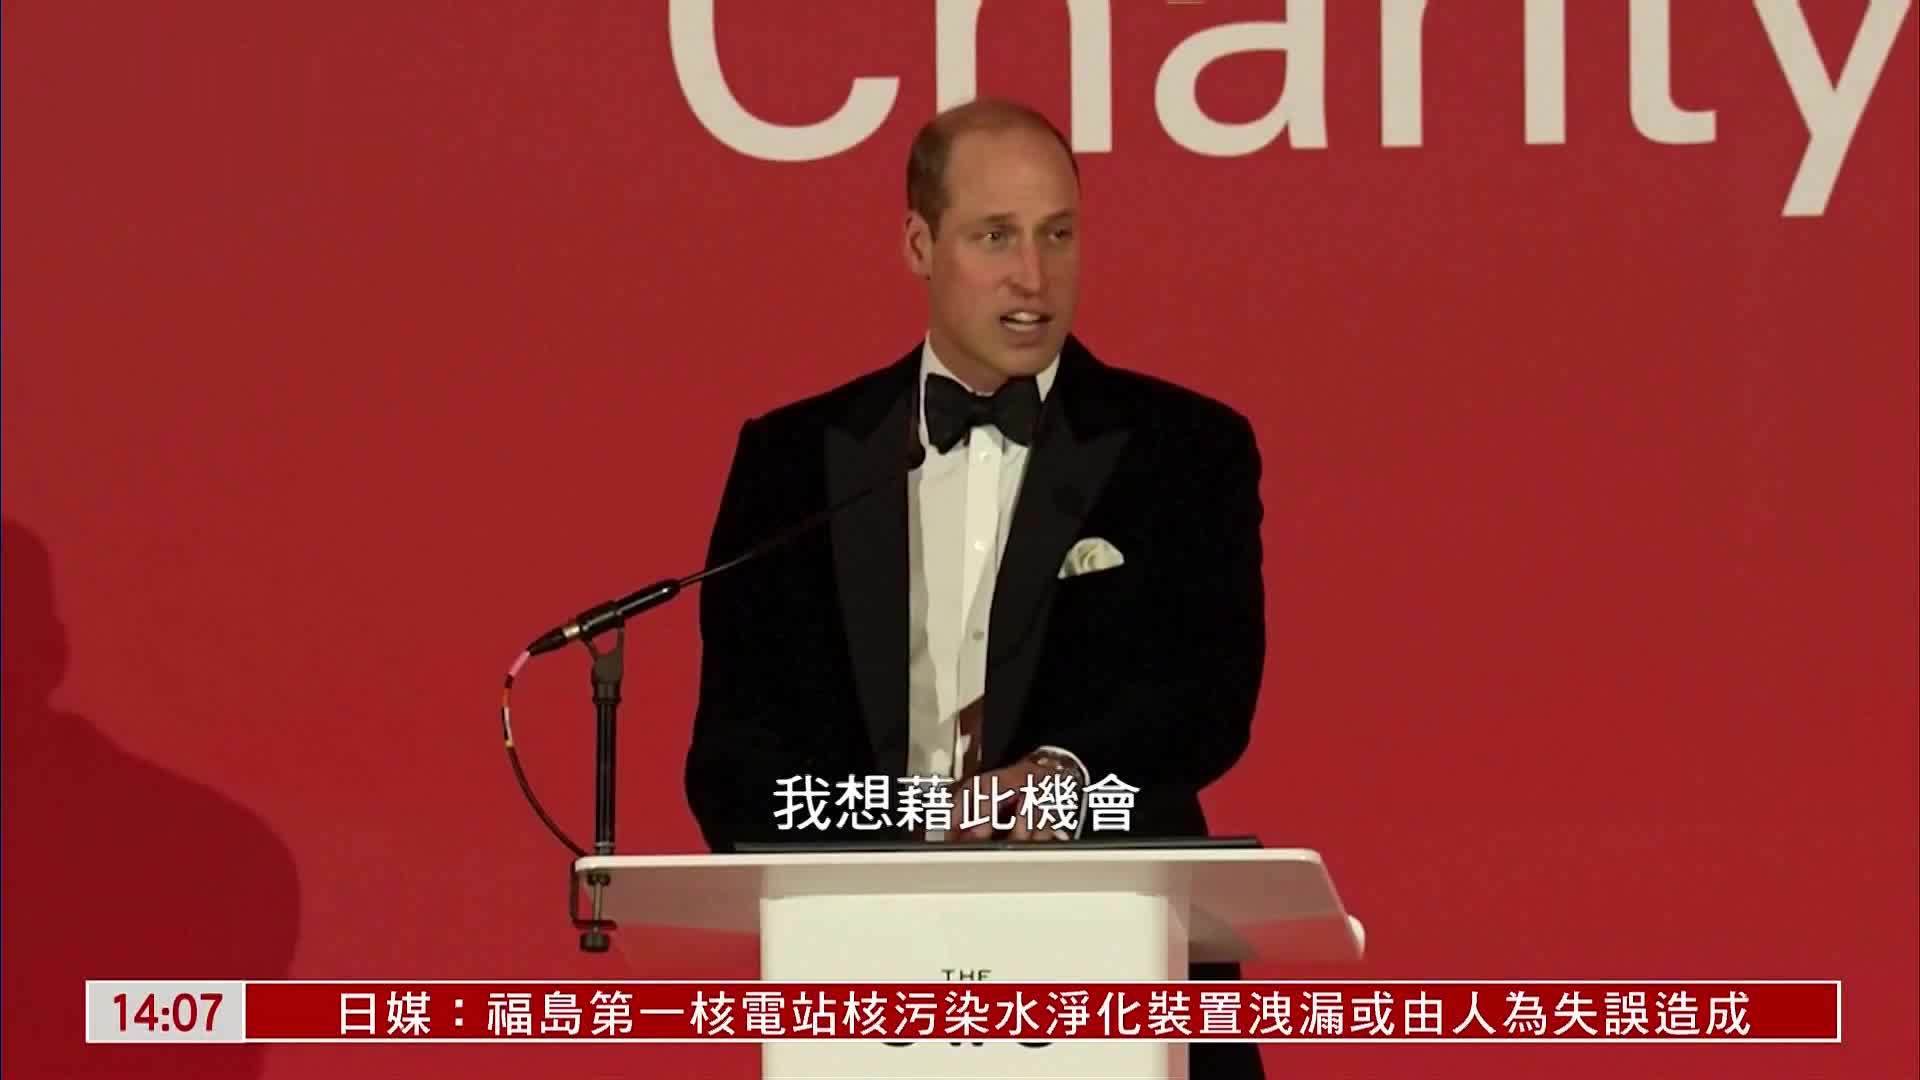 英国威廉王子出席慈善晚宴 恢复履行公职